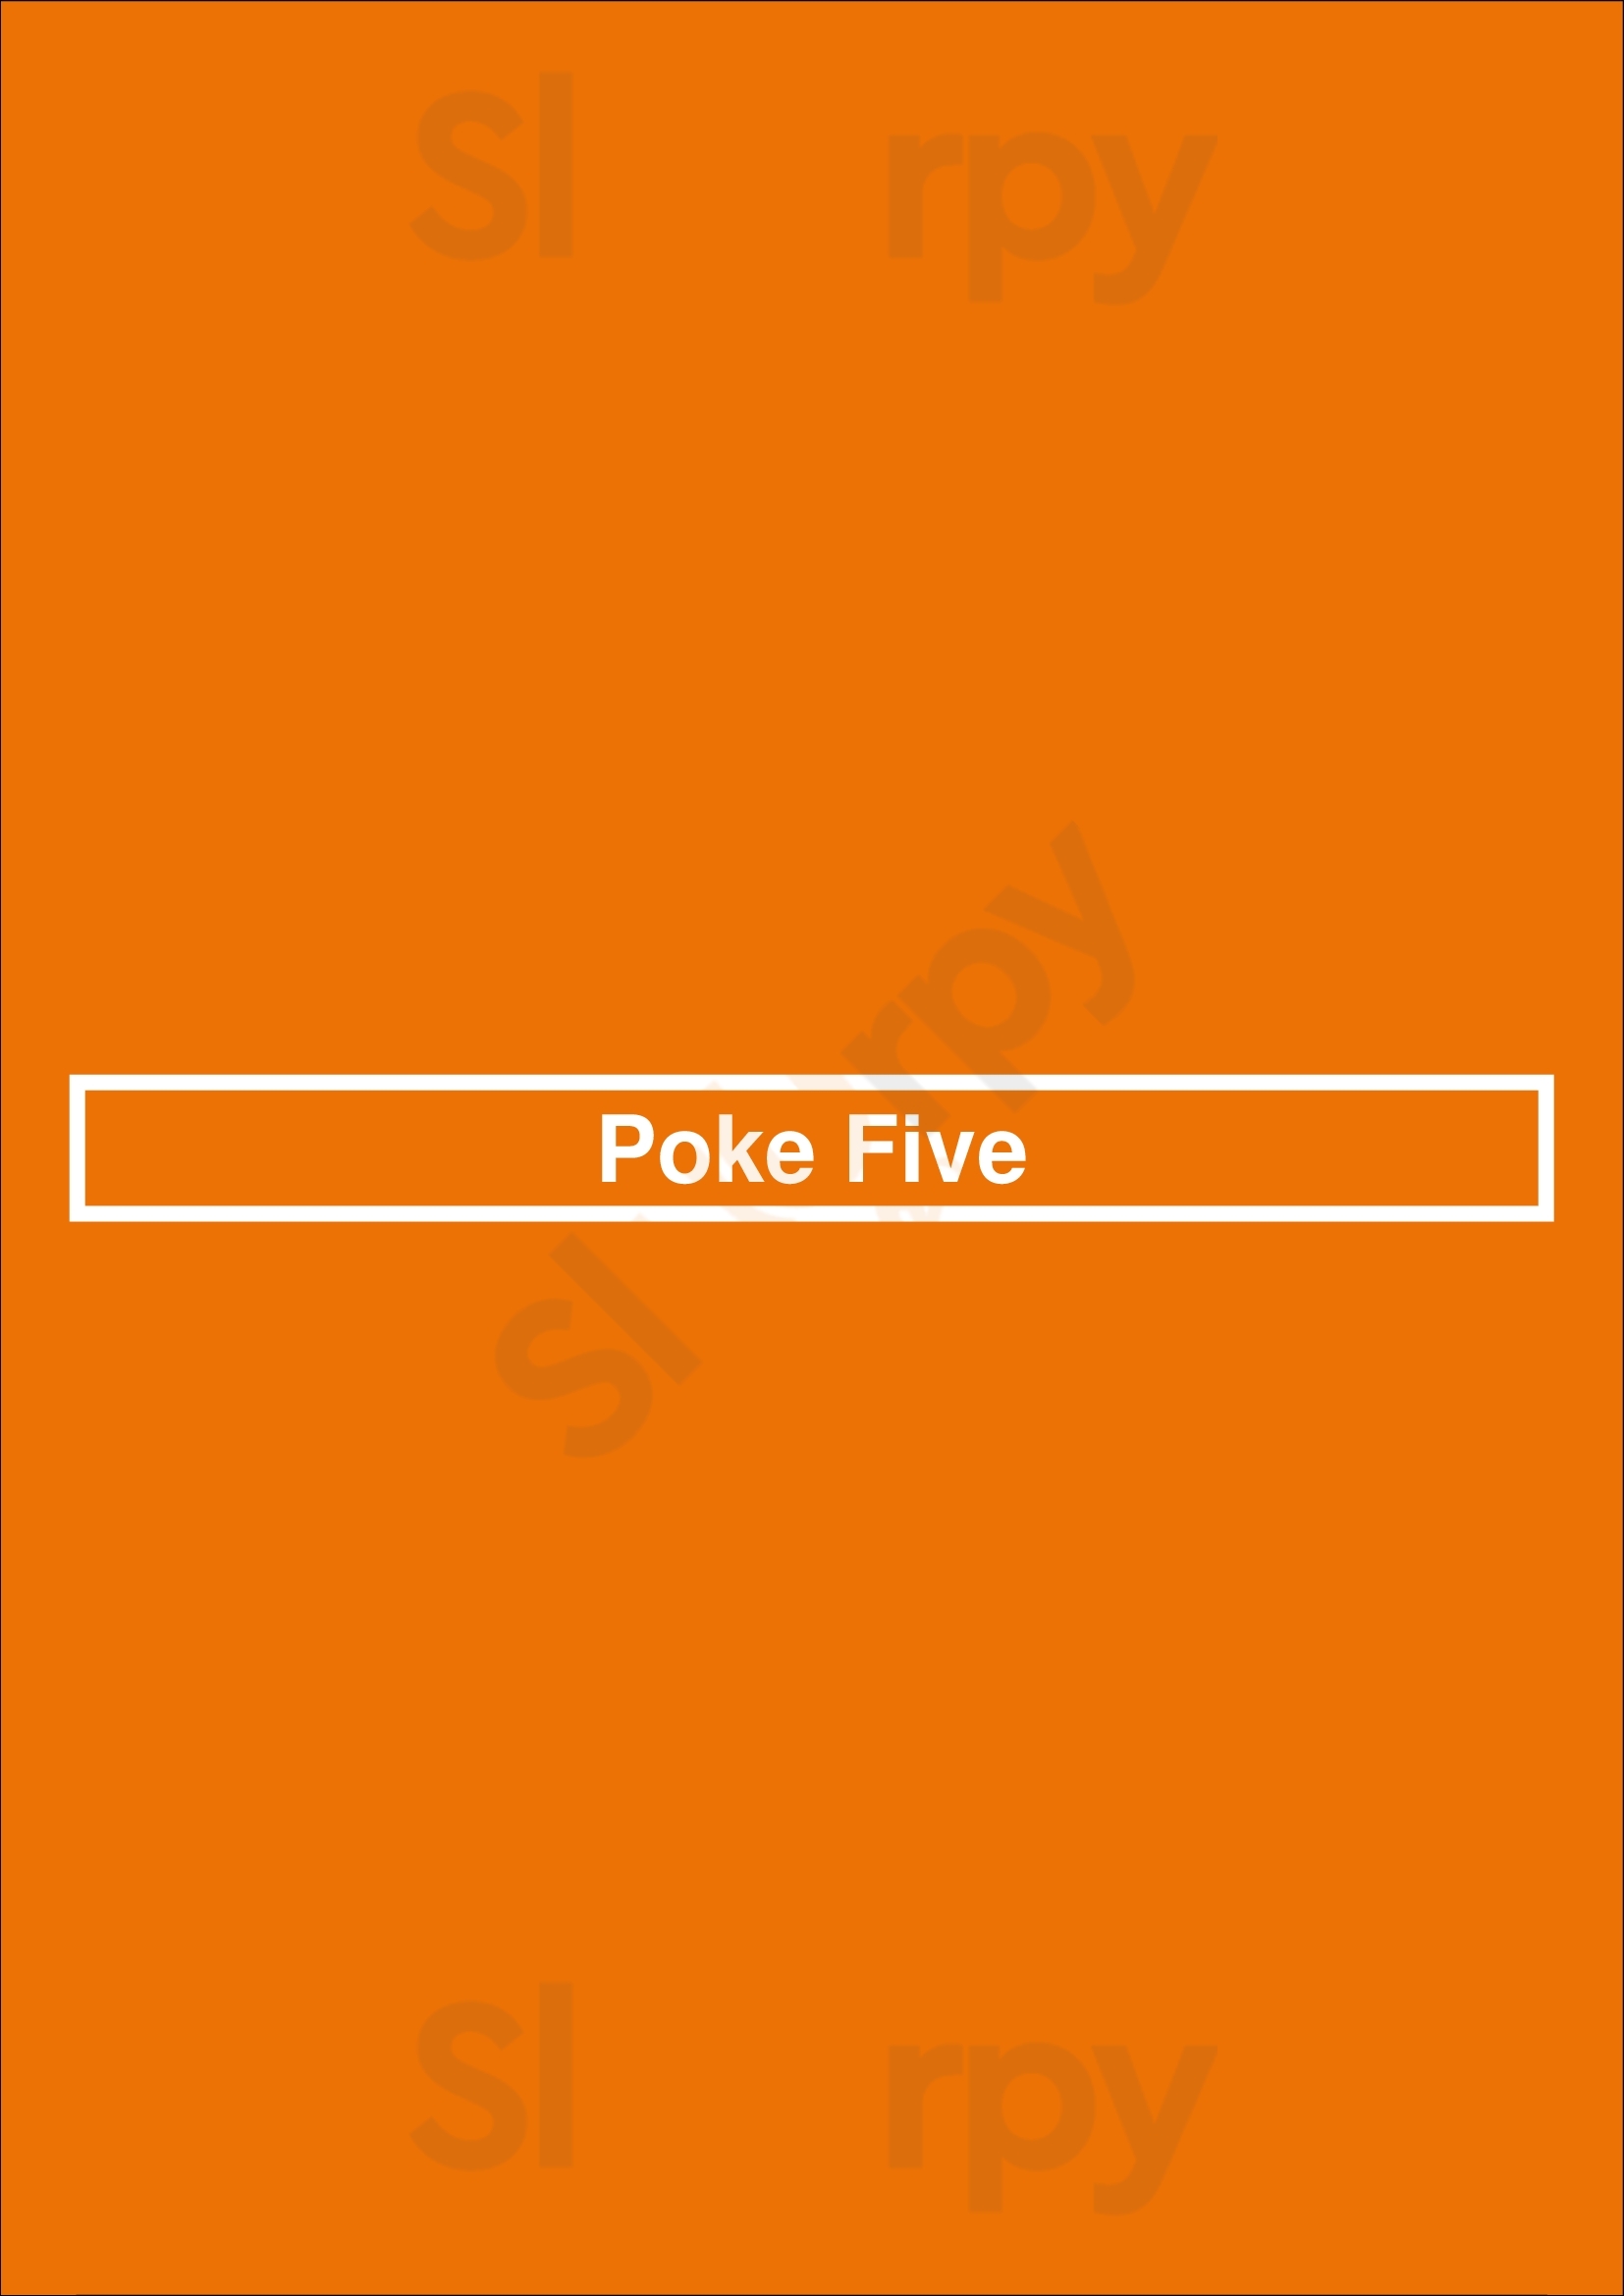 Poke Five Vancouver Menu - 1